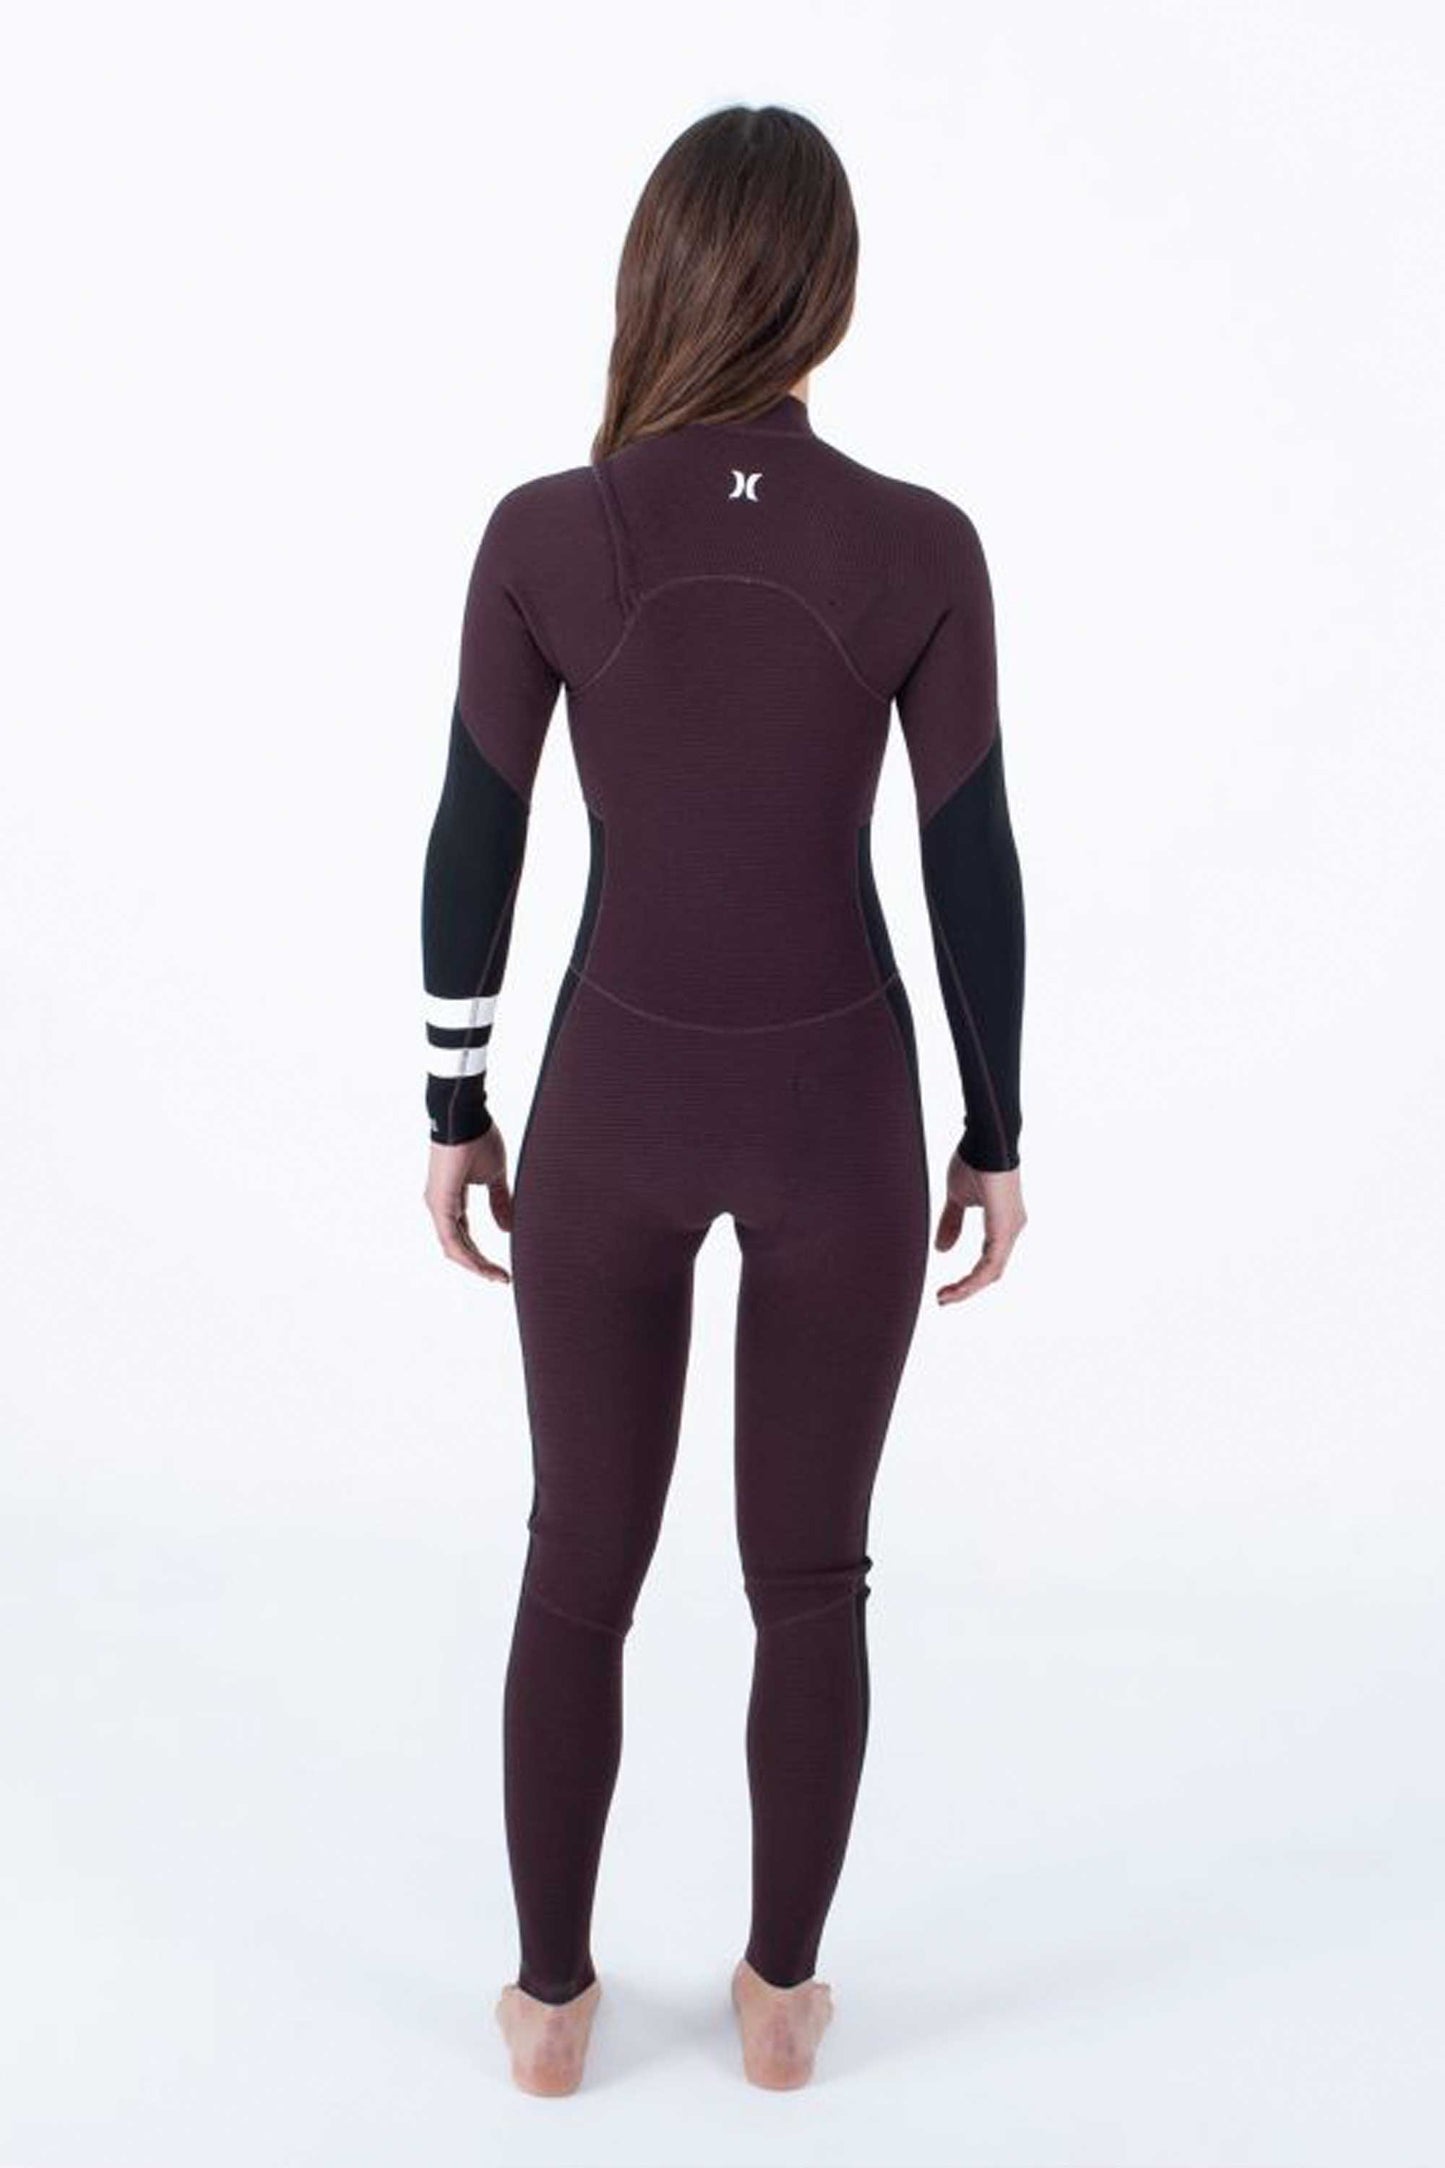 
                  
                    Pukas-Surf-Shop-Hurley-wetsuit-woman-3-2-fullsuit-women
                  
                